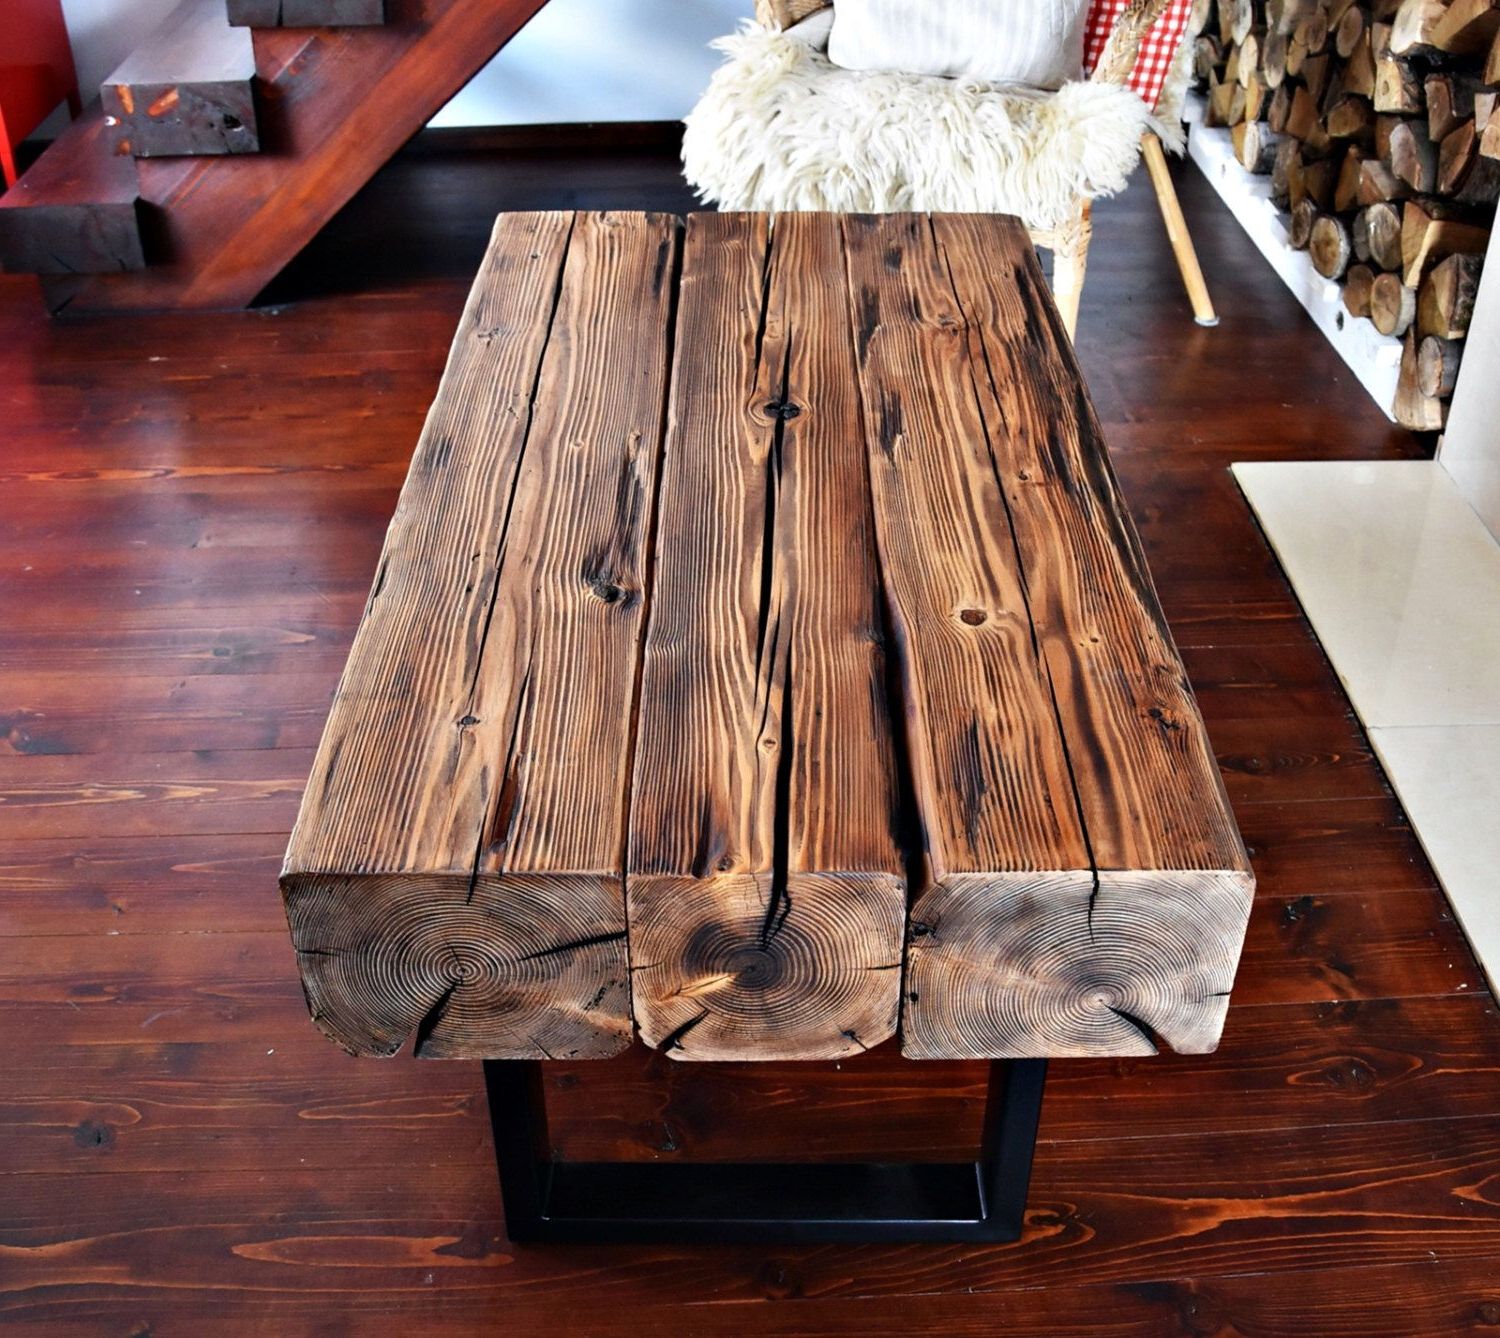 Handmade Reclaimed Wood & Steel Coffee Table Vintage Rustic Industrial Regarding Brown Rustic Coffee Tables (Gallery 18 of 20)